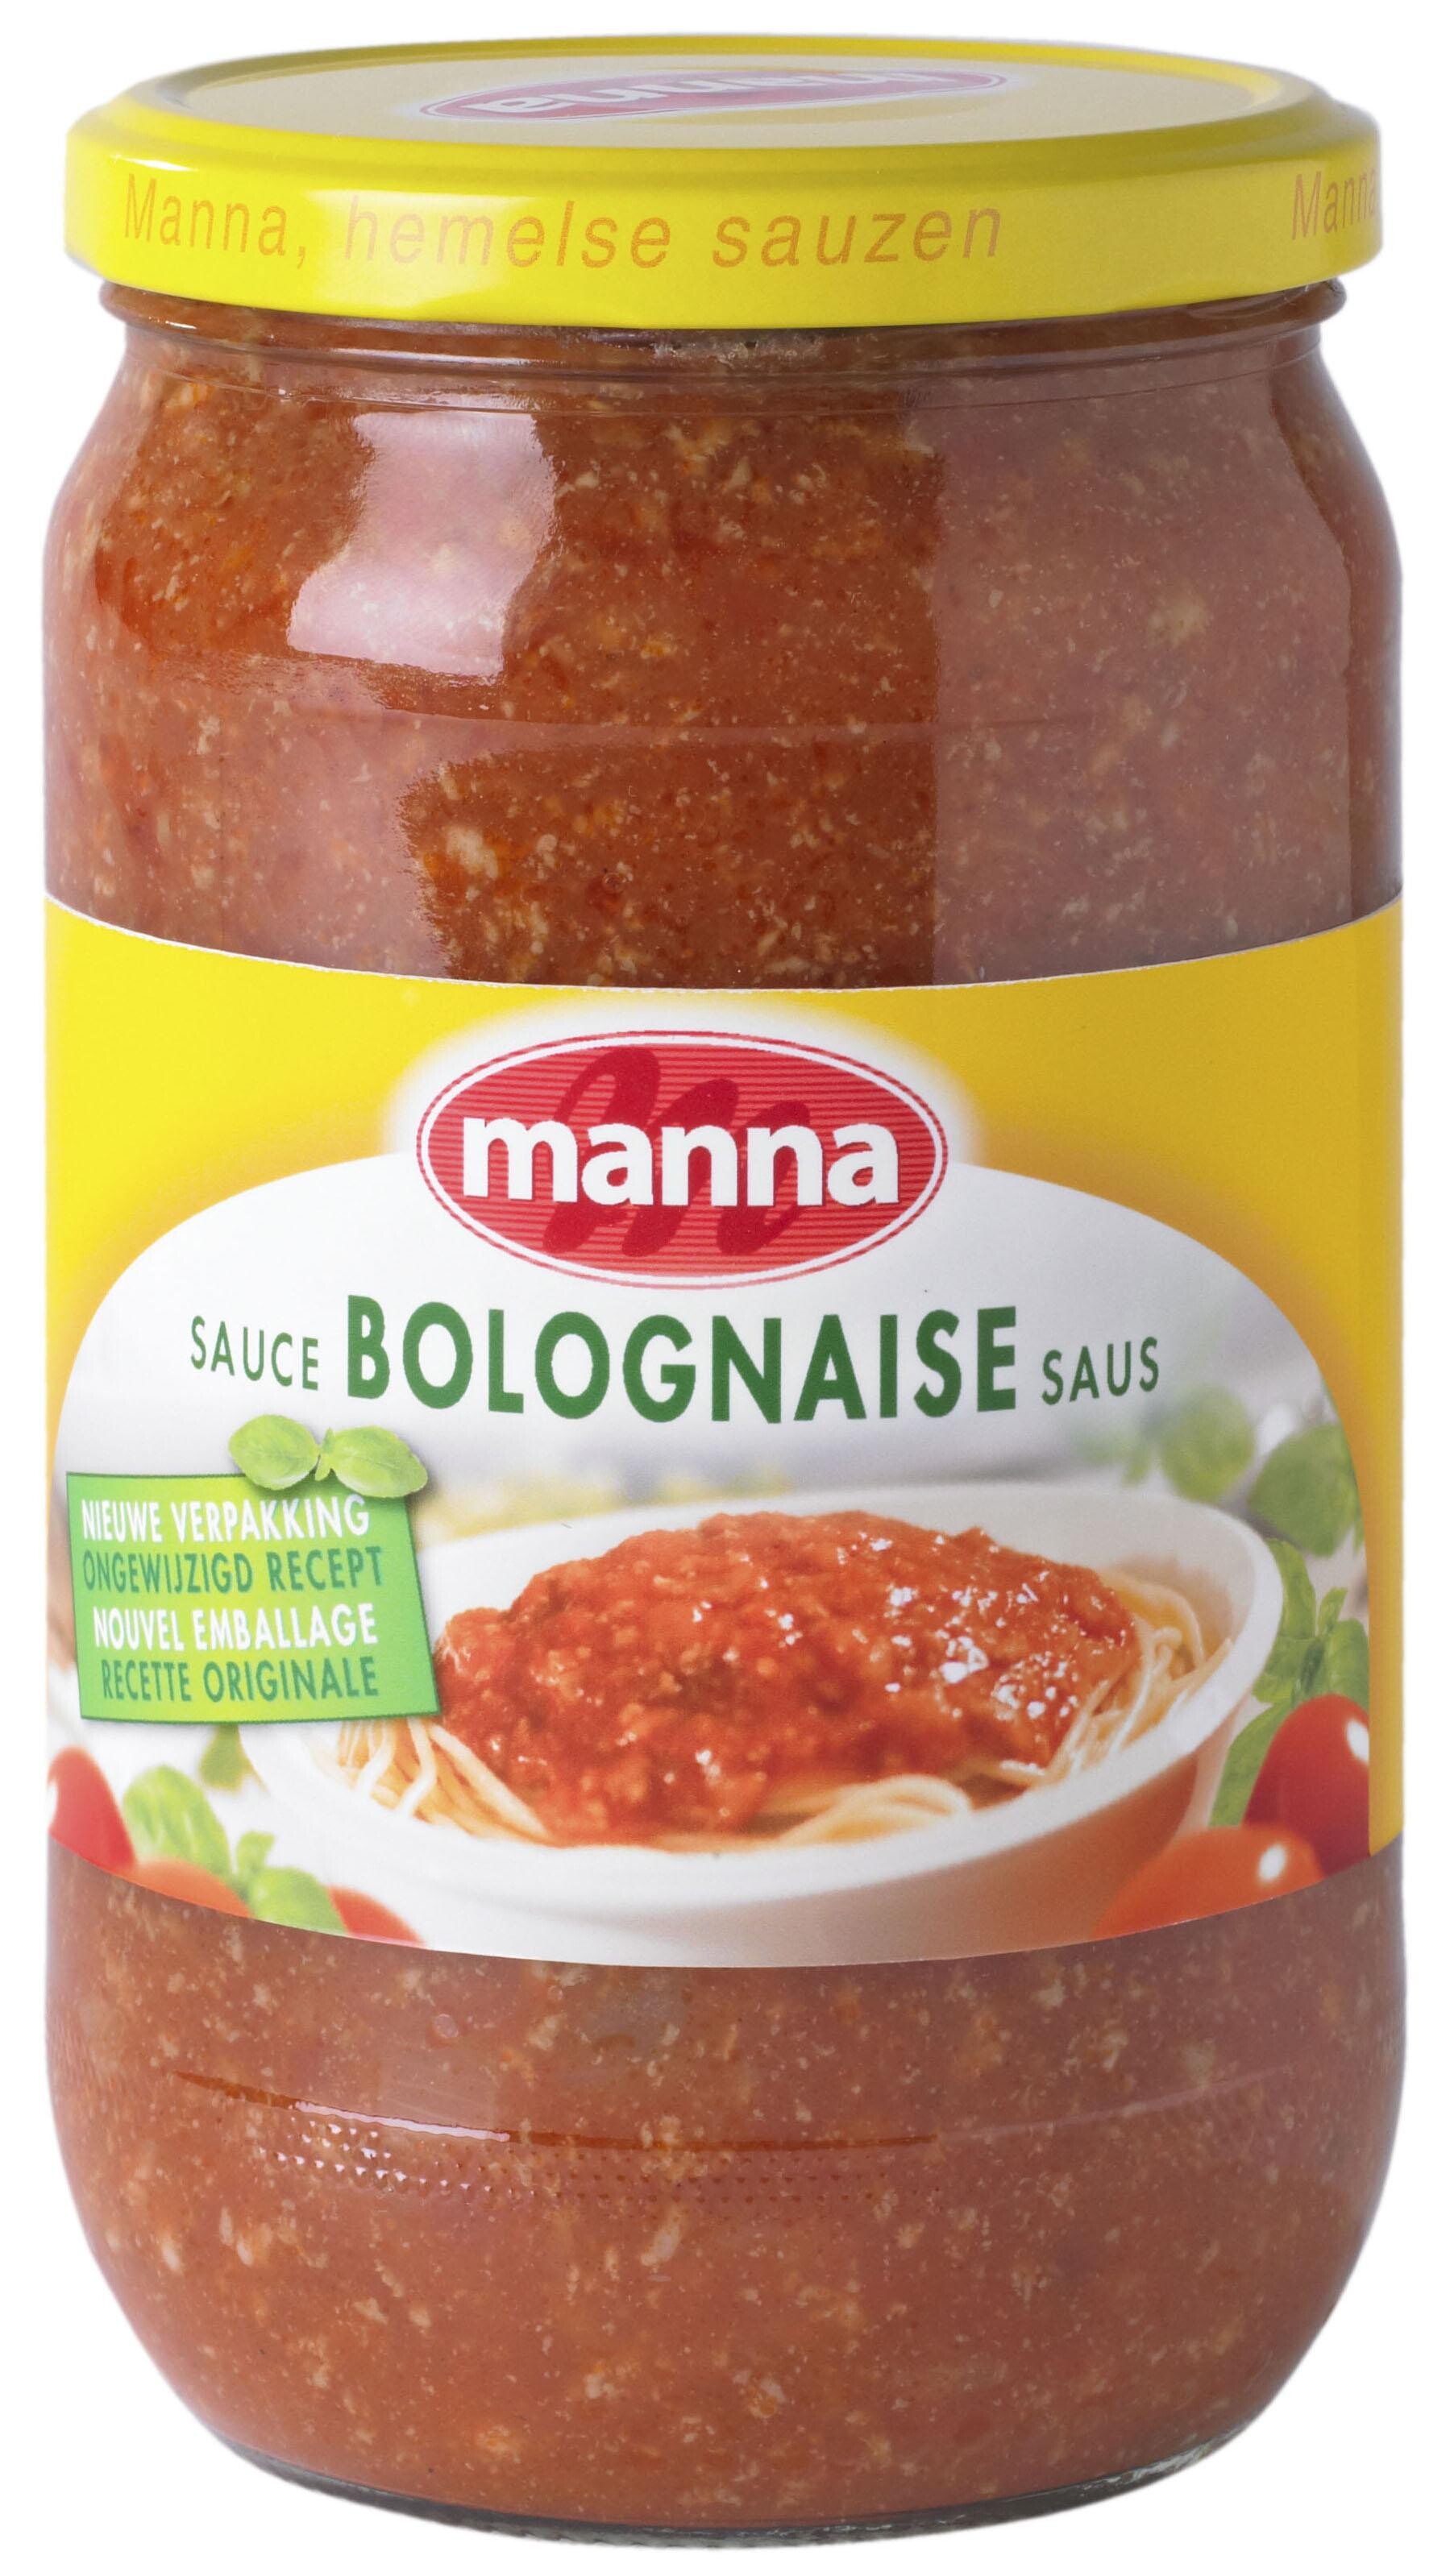 Manna Bolognaise sauce 2.1L